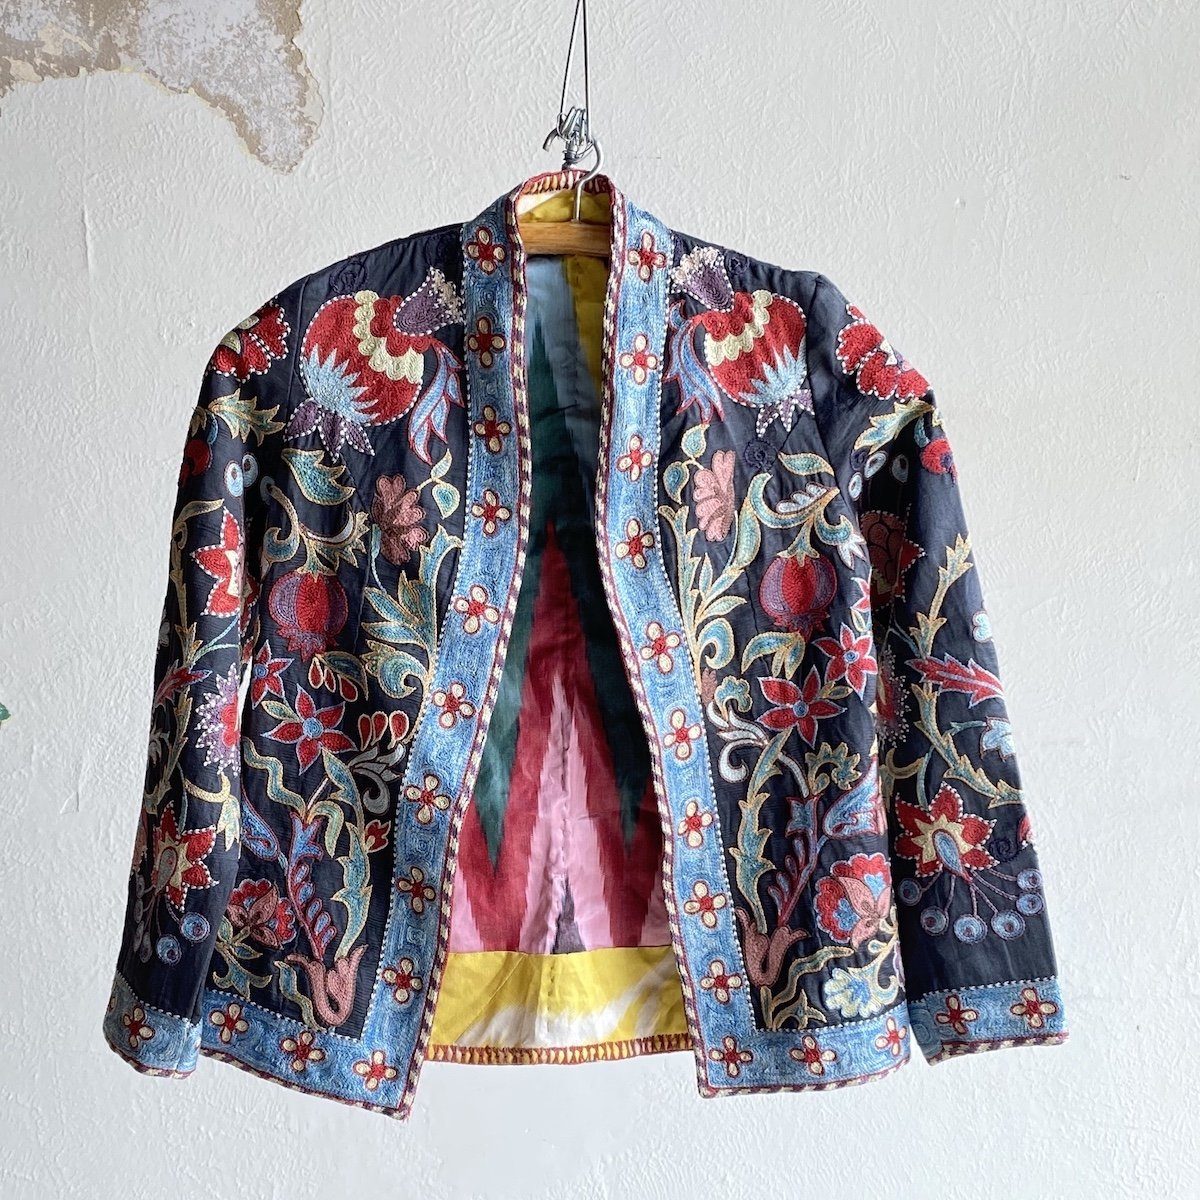 Hand-Stitched Suzani Jacket from Uzbekistan – B. Viz Design